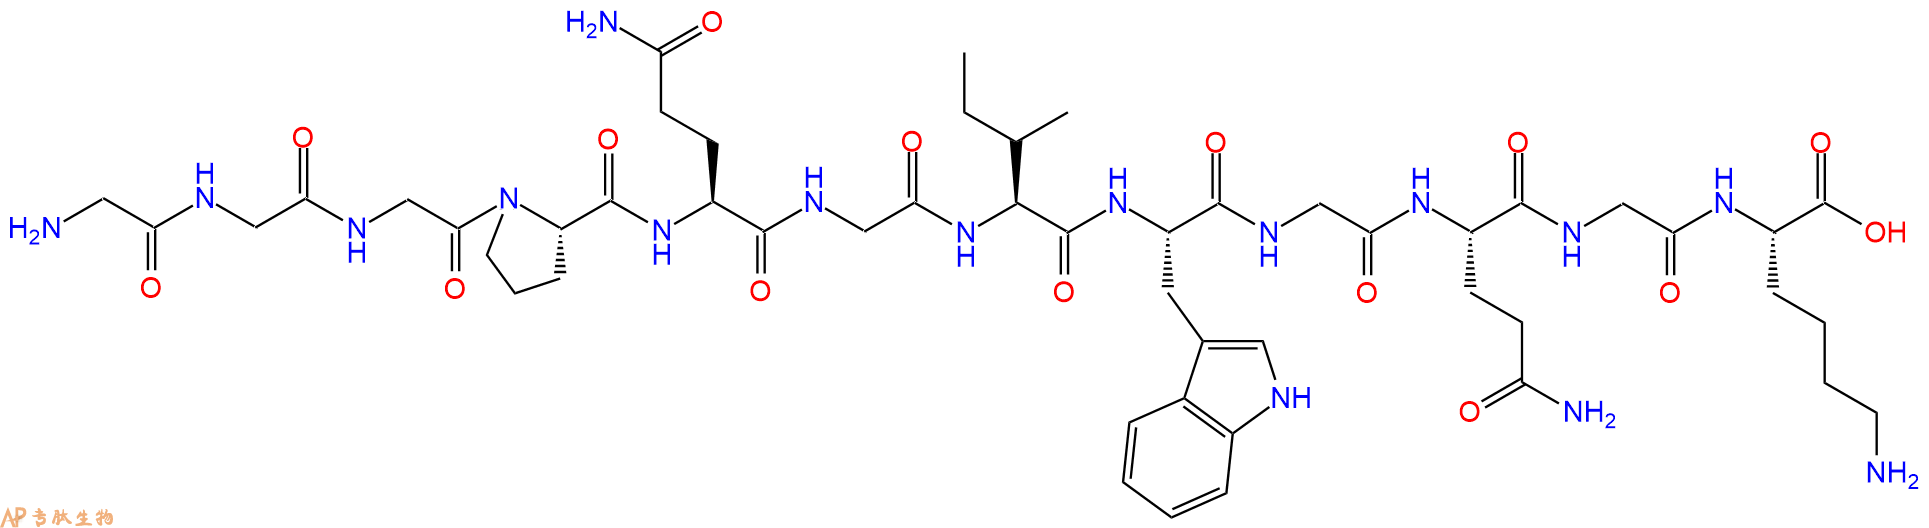 专肽生物产品金属基质蛋白酶2/9 (MMP2/9) 响应肽